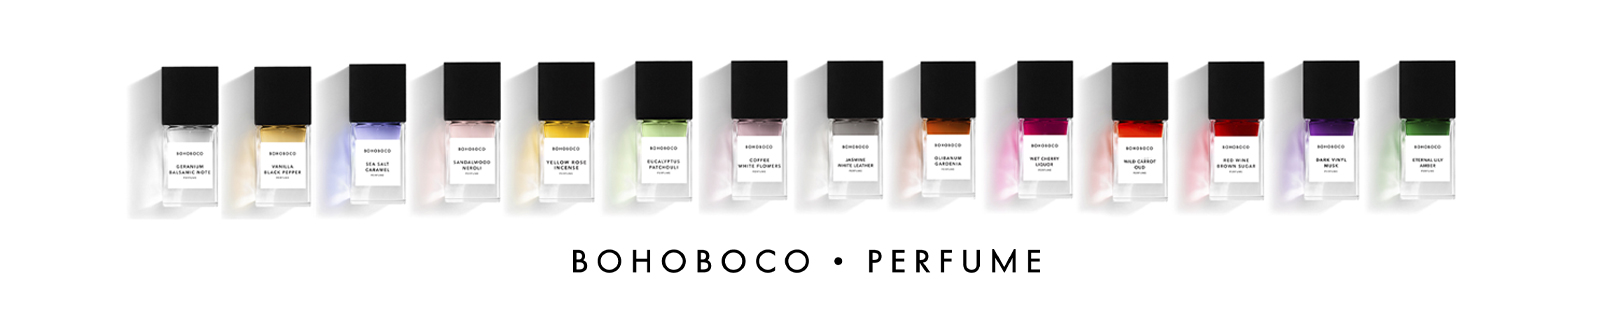 BOHOBOCO PERFUMES perfumes nicho